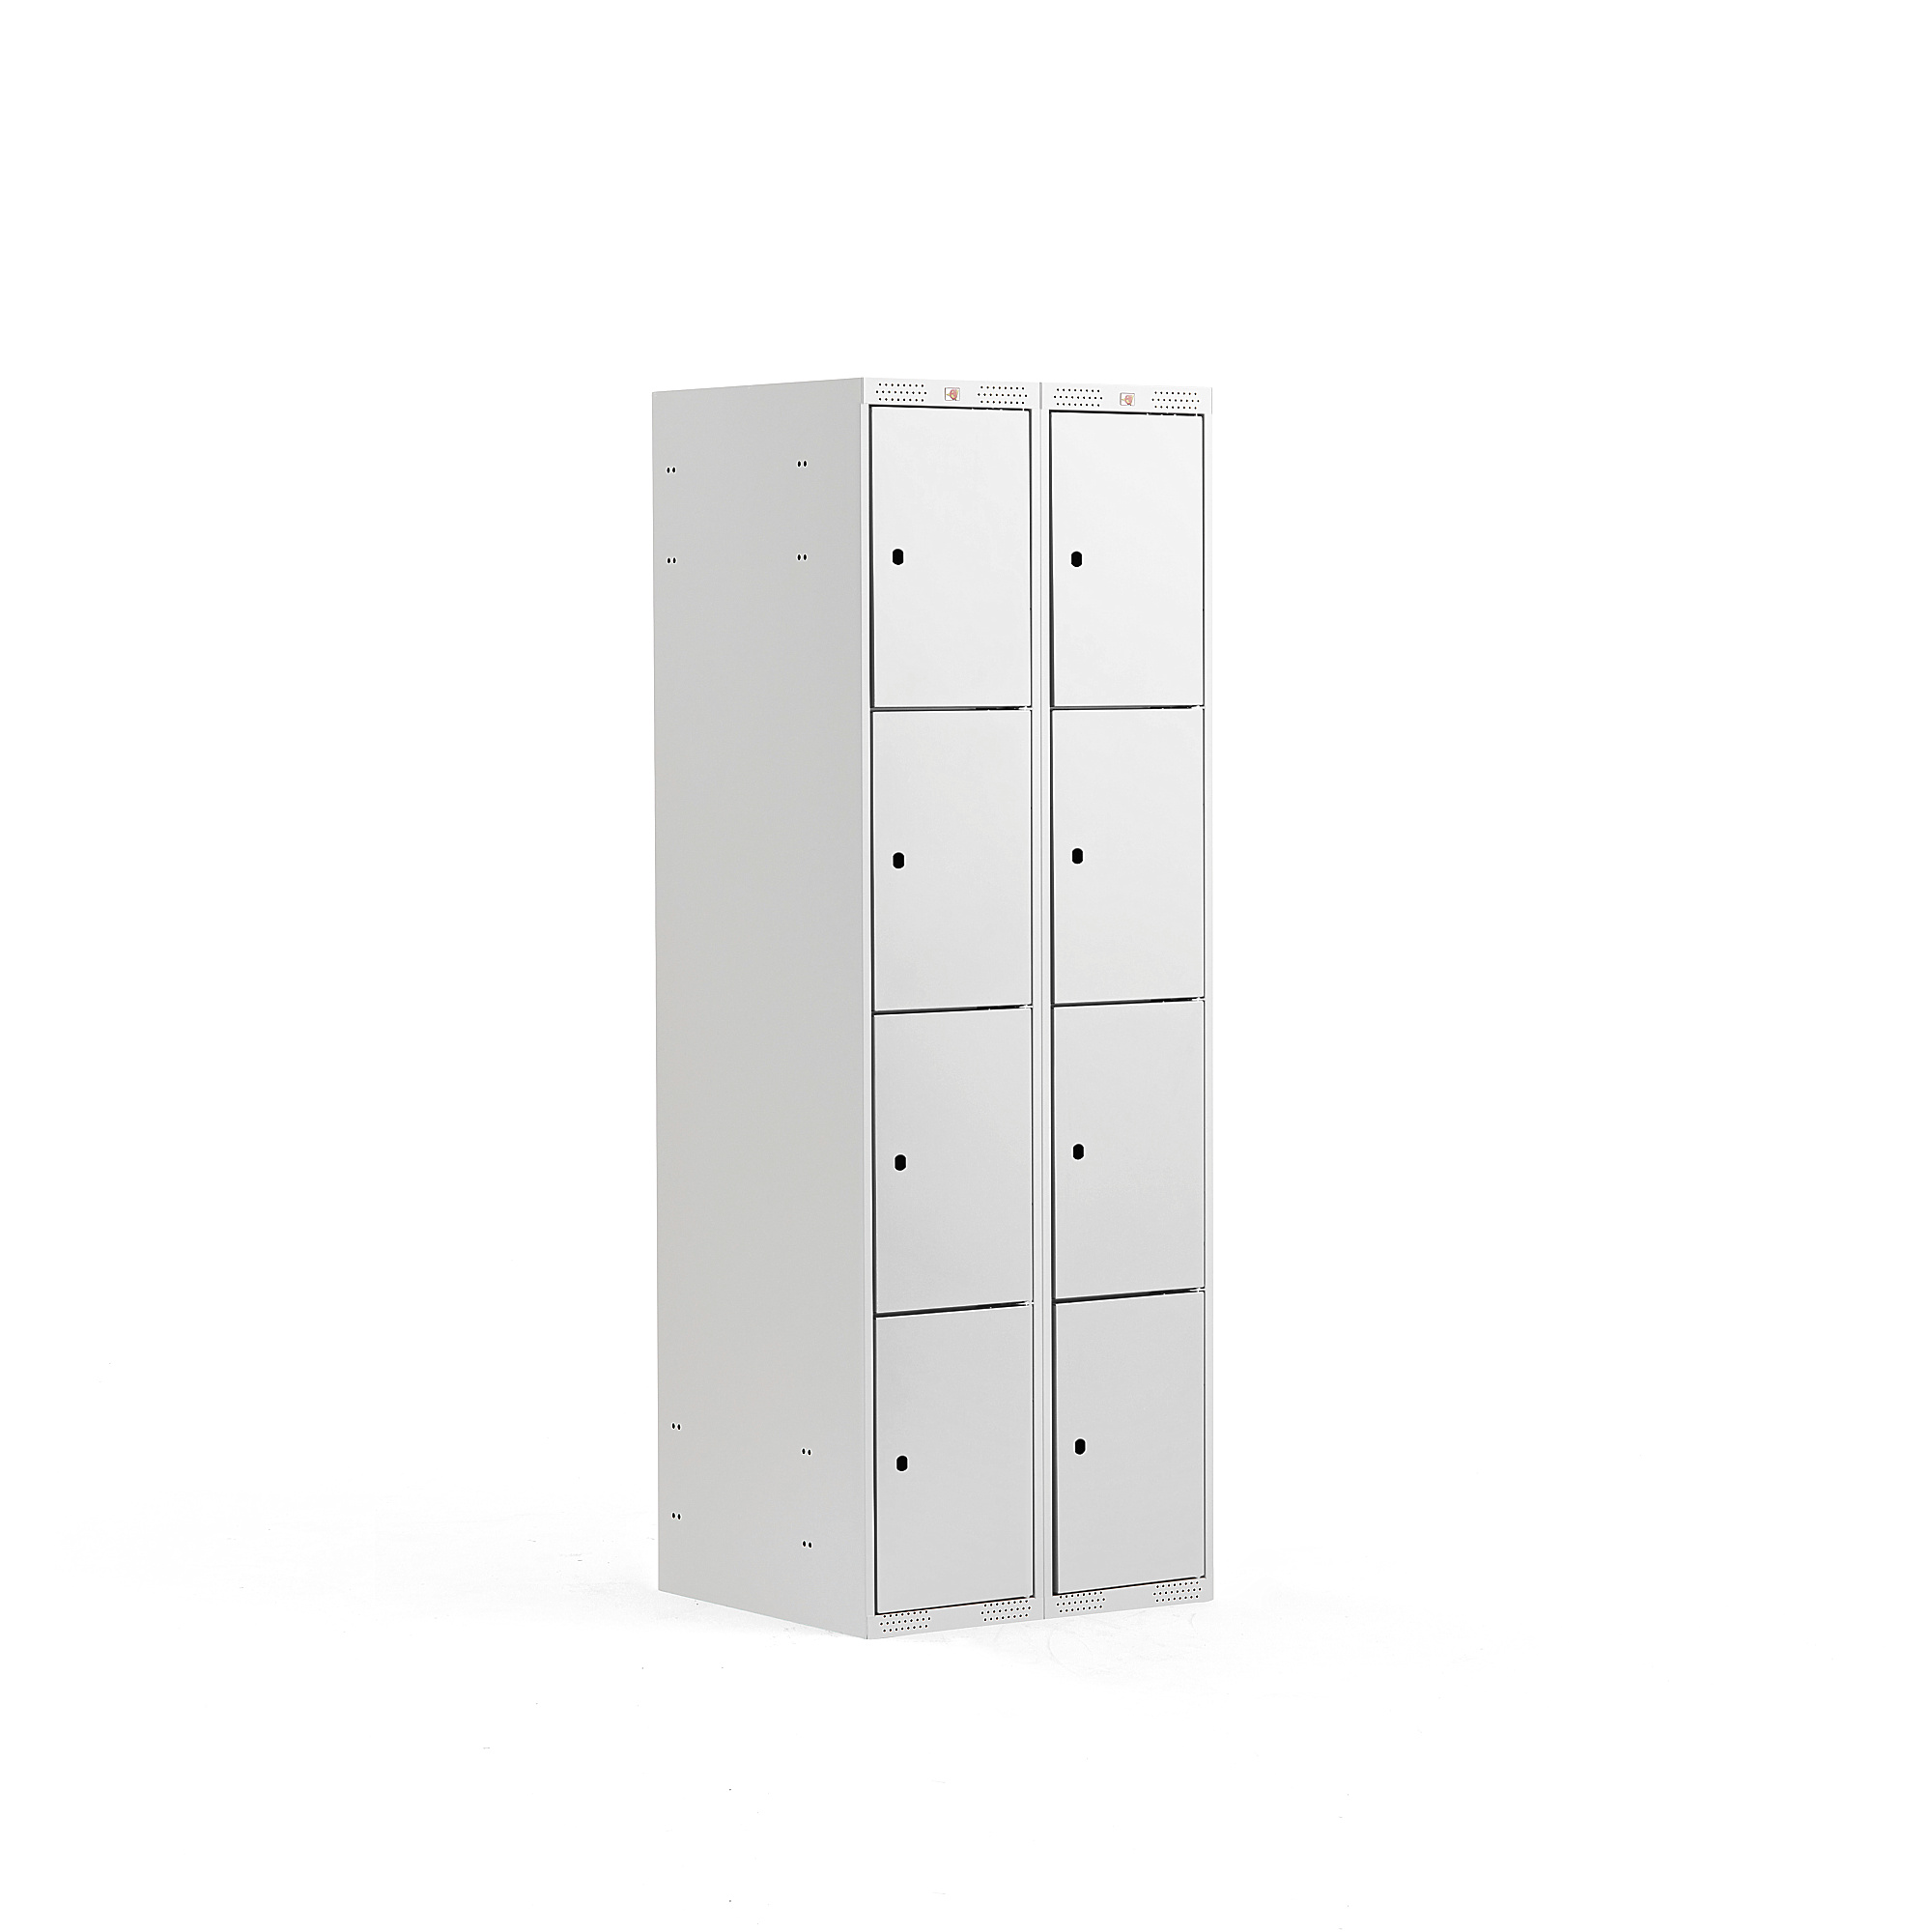 Boxová šatní skříň CLASSIC, 2 sekce, 8 boxů, 1740x600x550 mm, šedá, šedé dveře